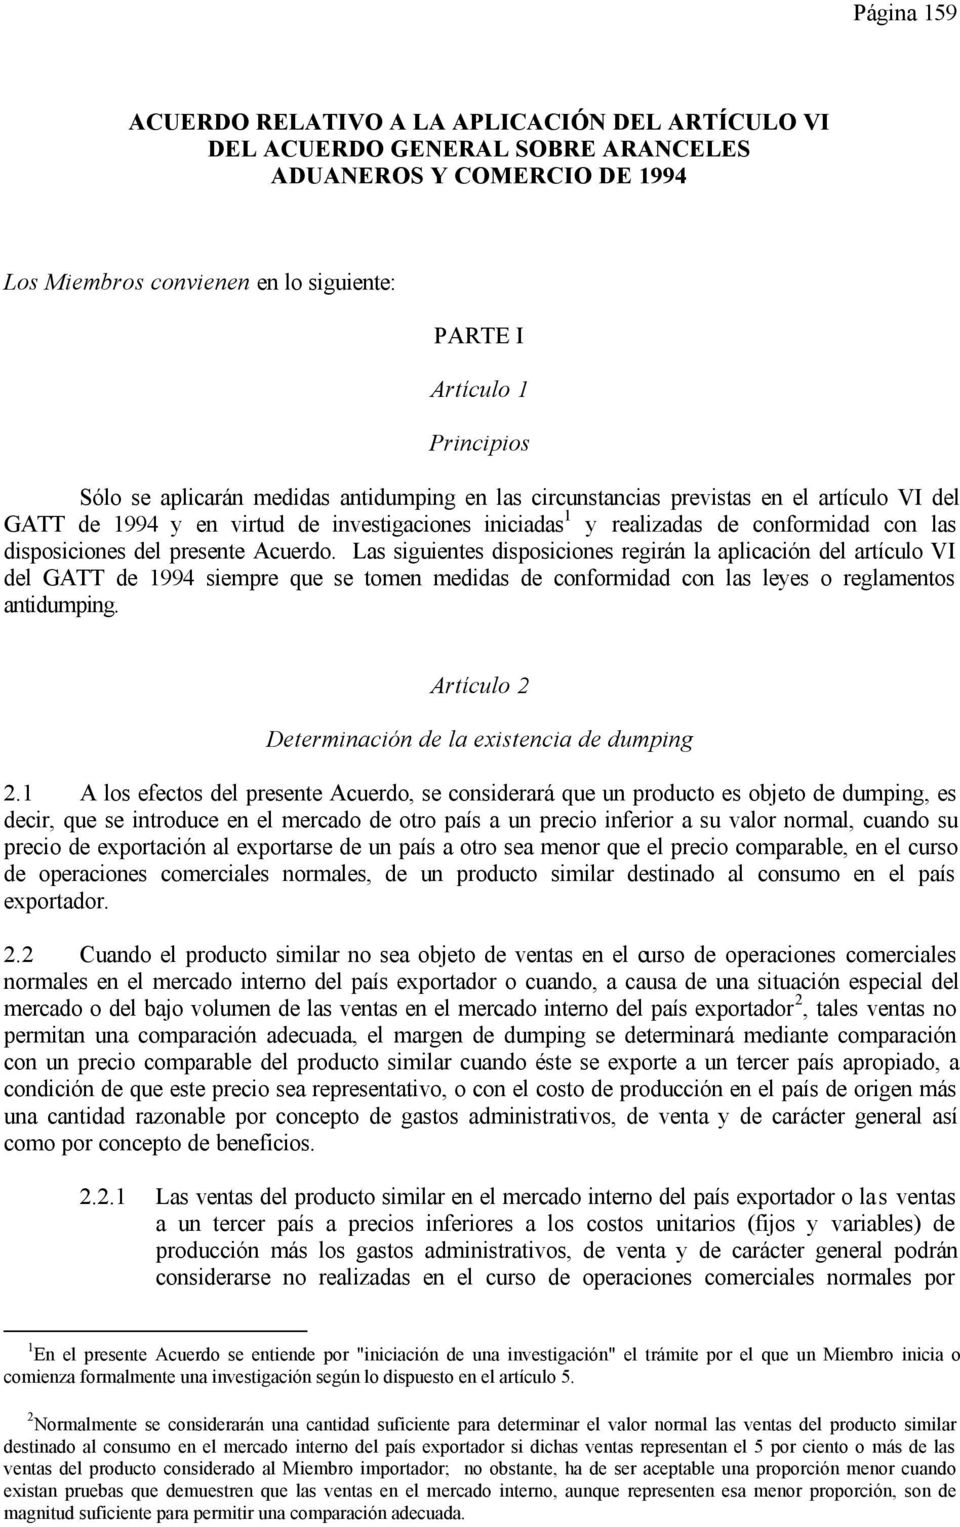 presente Acuerdo. Las siguientes disposiciones regirán la aplicación del artículo VI del GATT de 1994 siempre que se tomen medidas de conformidad con las leyes o reglamentos antidumping.